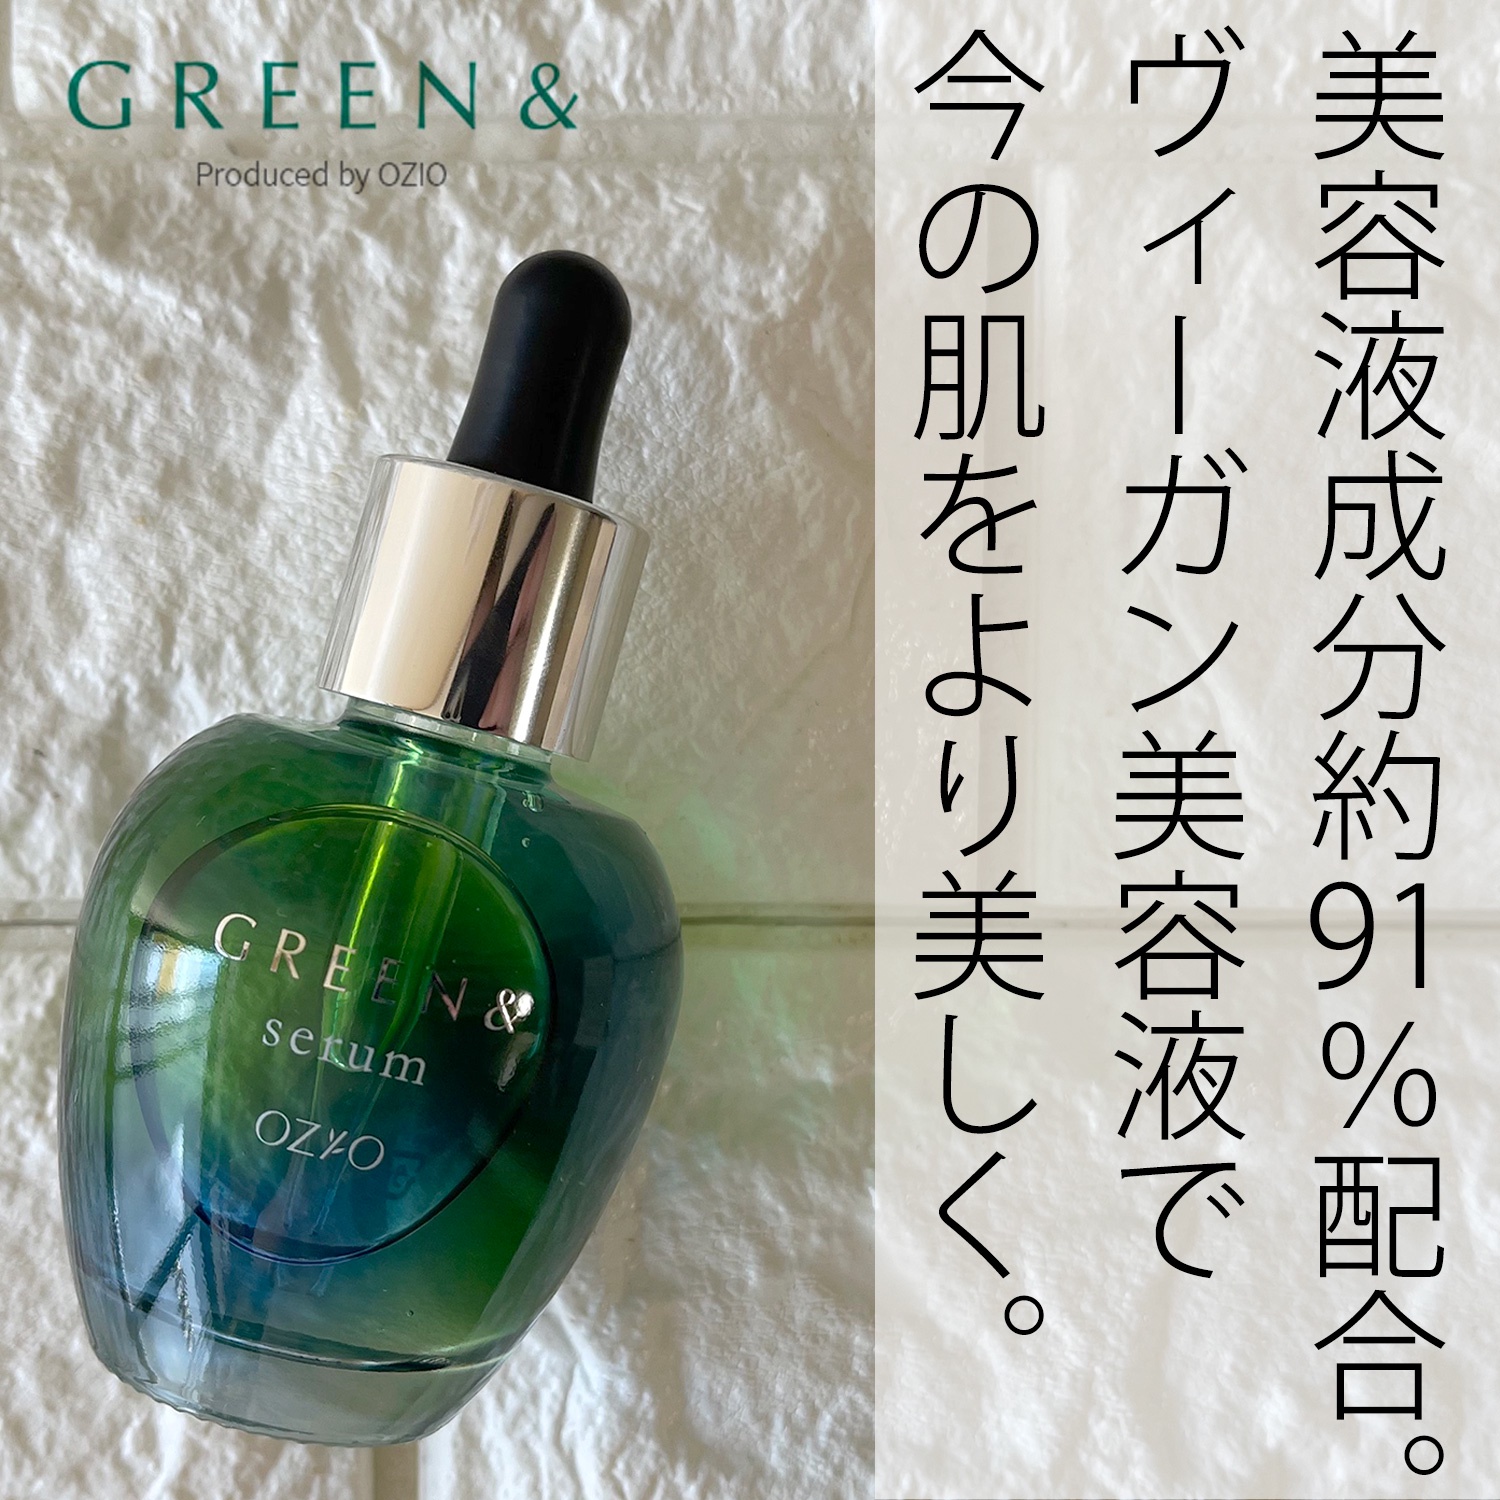 全国宅配無料オージオ ozio green モイストジェル グリーンアンド セラム 基礎化粧品